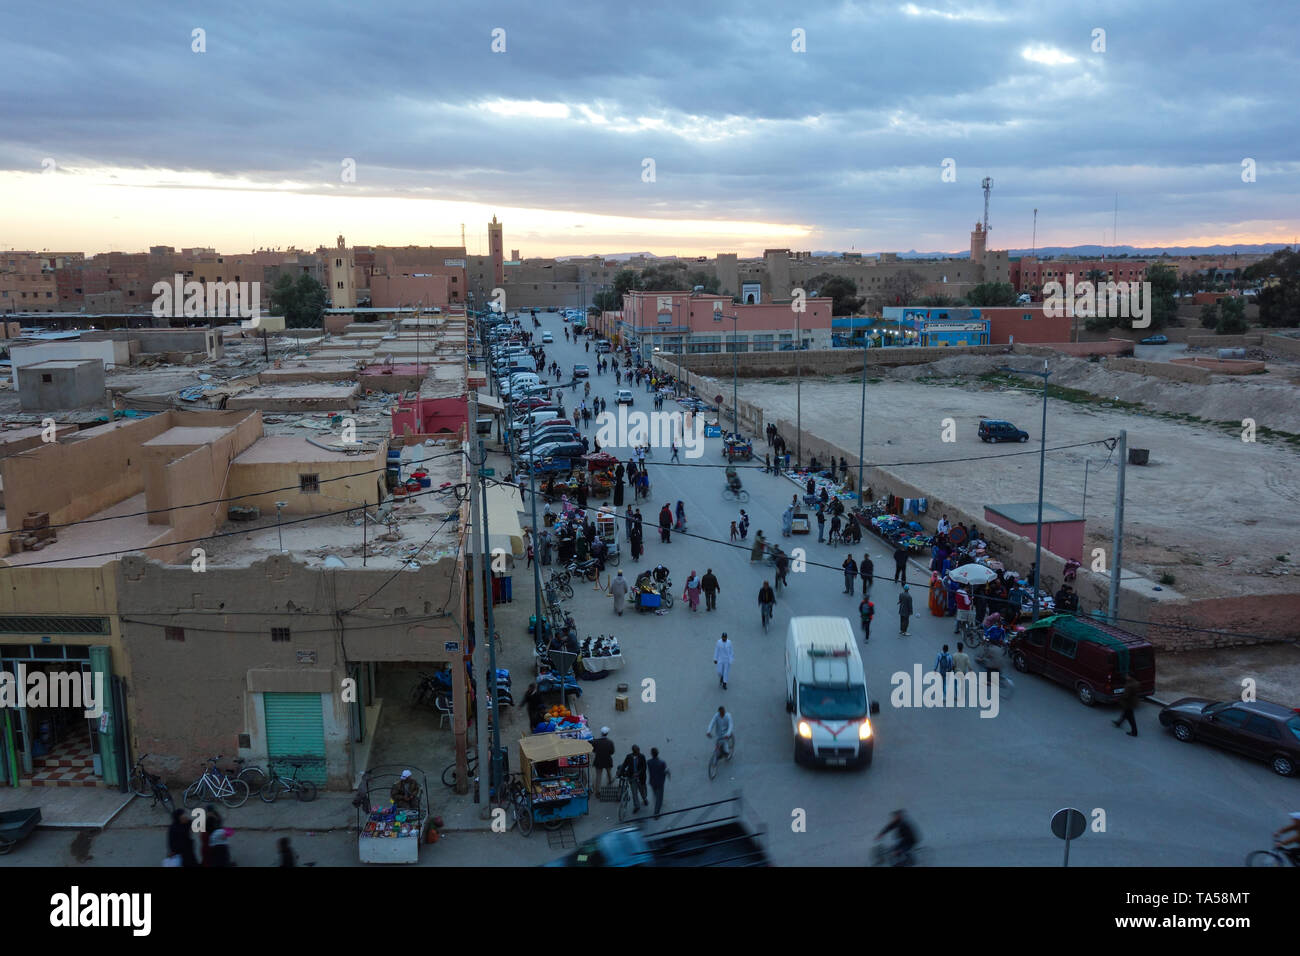 Rissani, Maroc - Mars 21st, 2019 : une vue sur la rue principale avec les sections locales d'occupation pendant le coucher du soleil. Banque D'Images